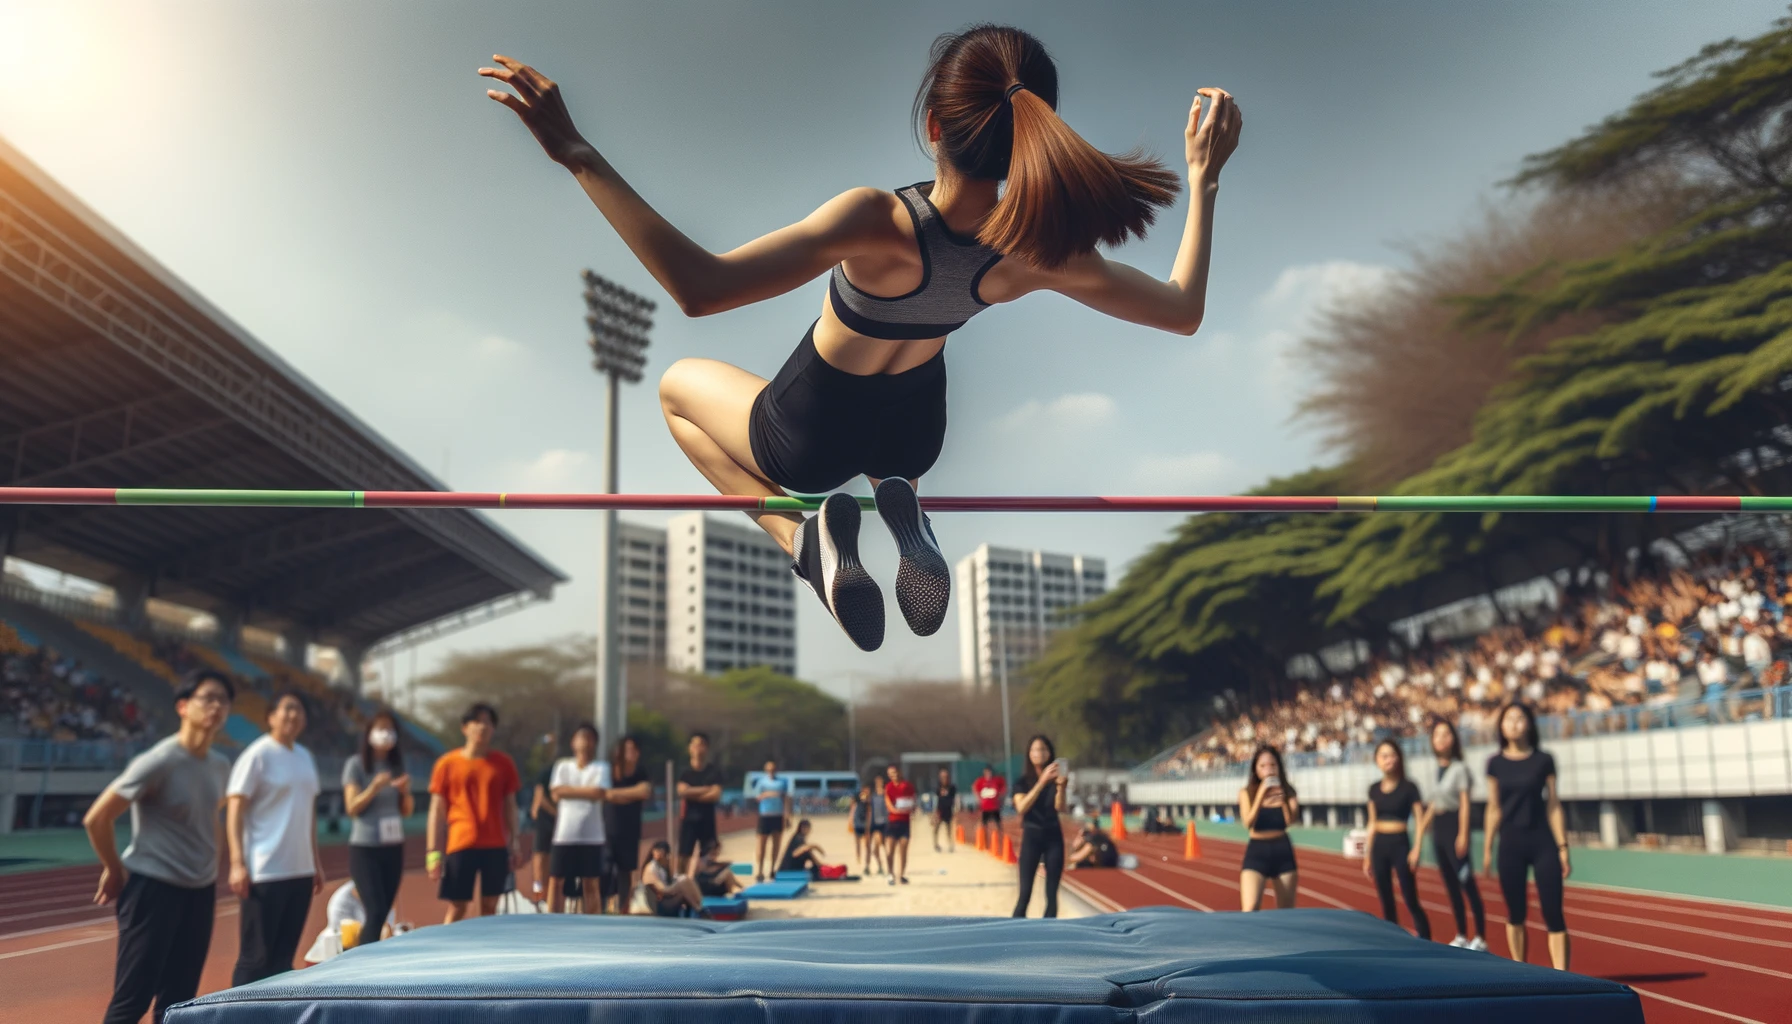 Foto einer Athletin, einer jungen Frau asiatischer Abstammung, in der Luft, während sie versucht, eine Hochsprunglatte zu überspringen.